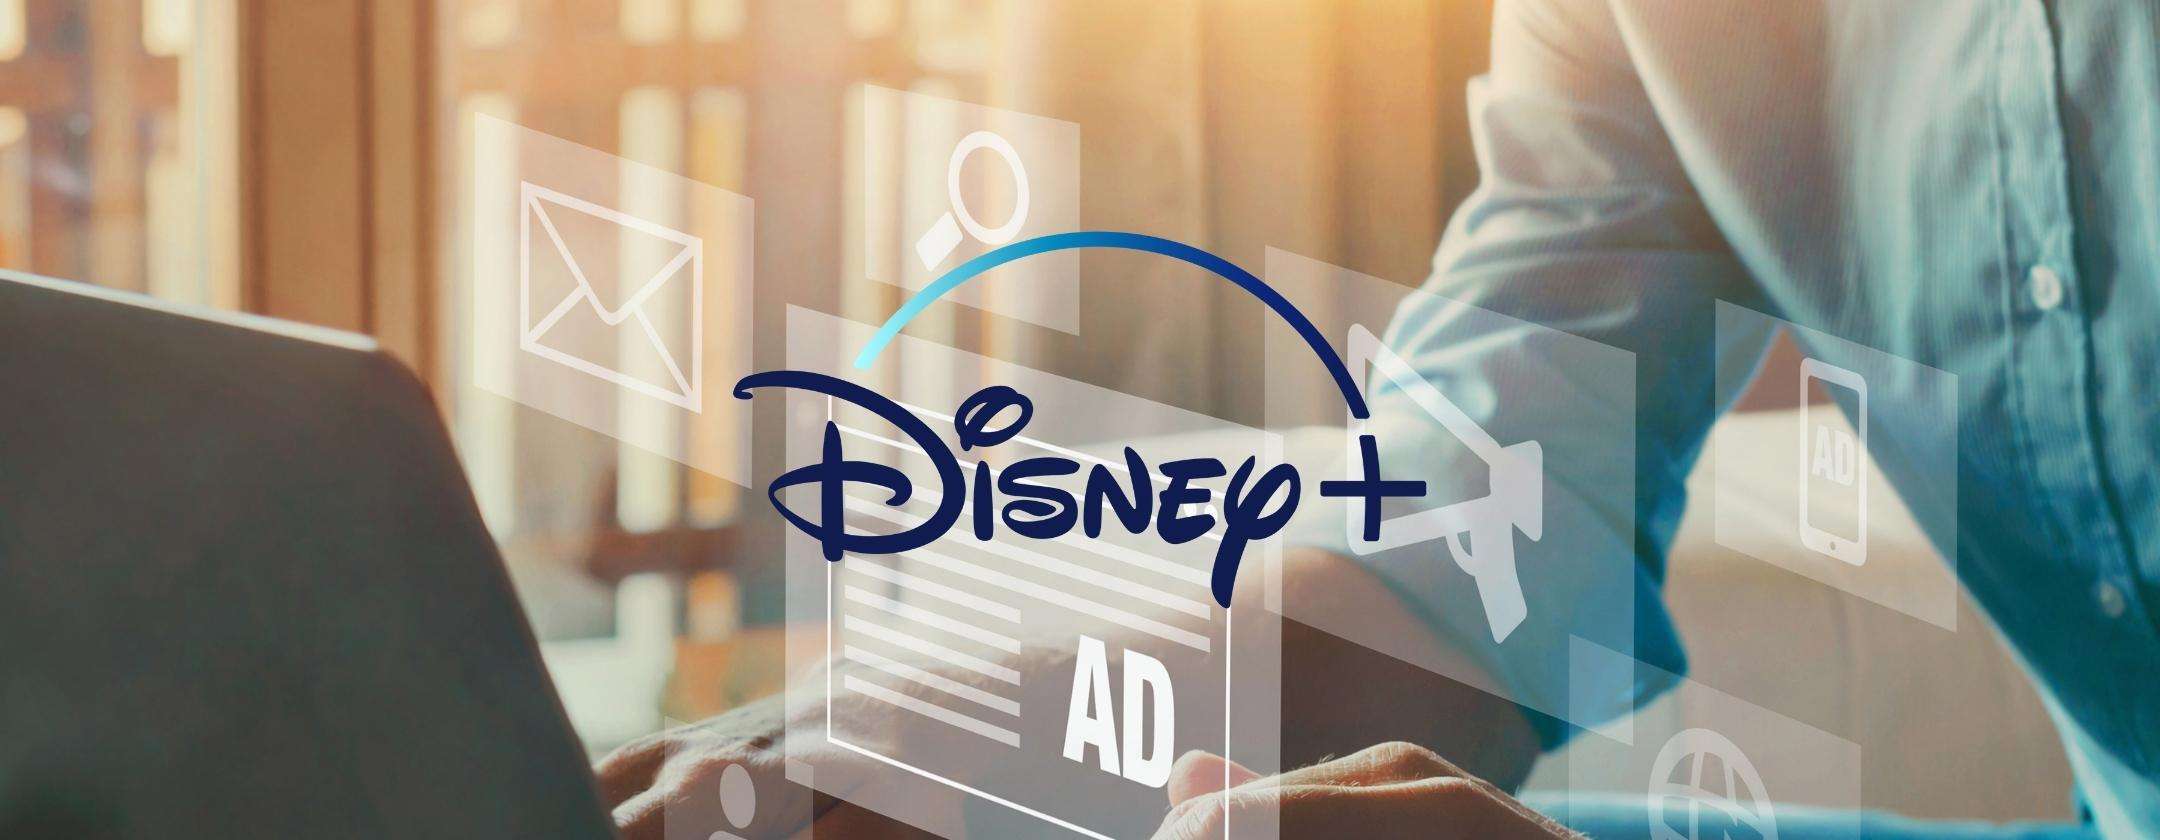 Disney+: ora sappiamo come sarà il servizio con la pubblicità